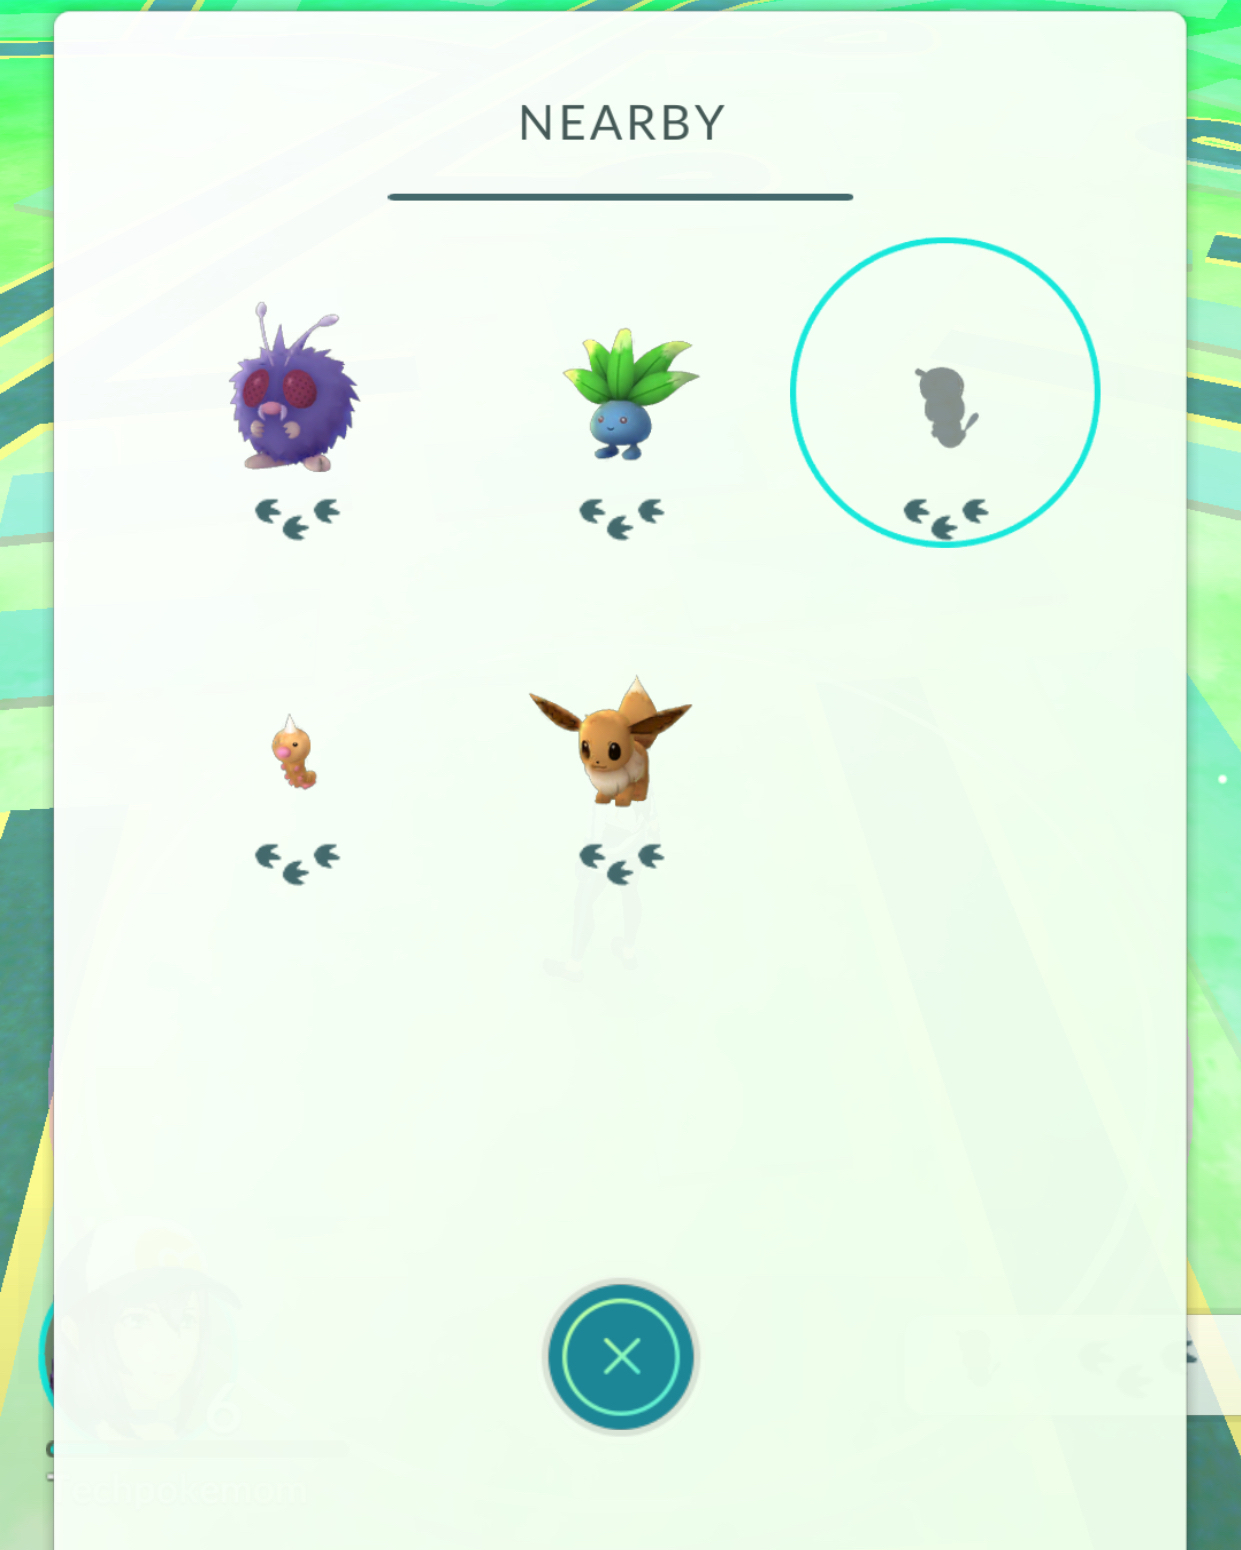 How to Find Nearby Pokémon in Pokémon Go